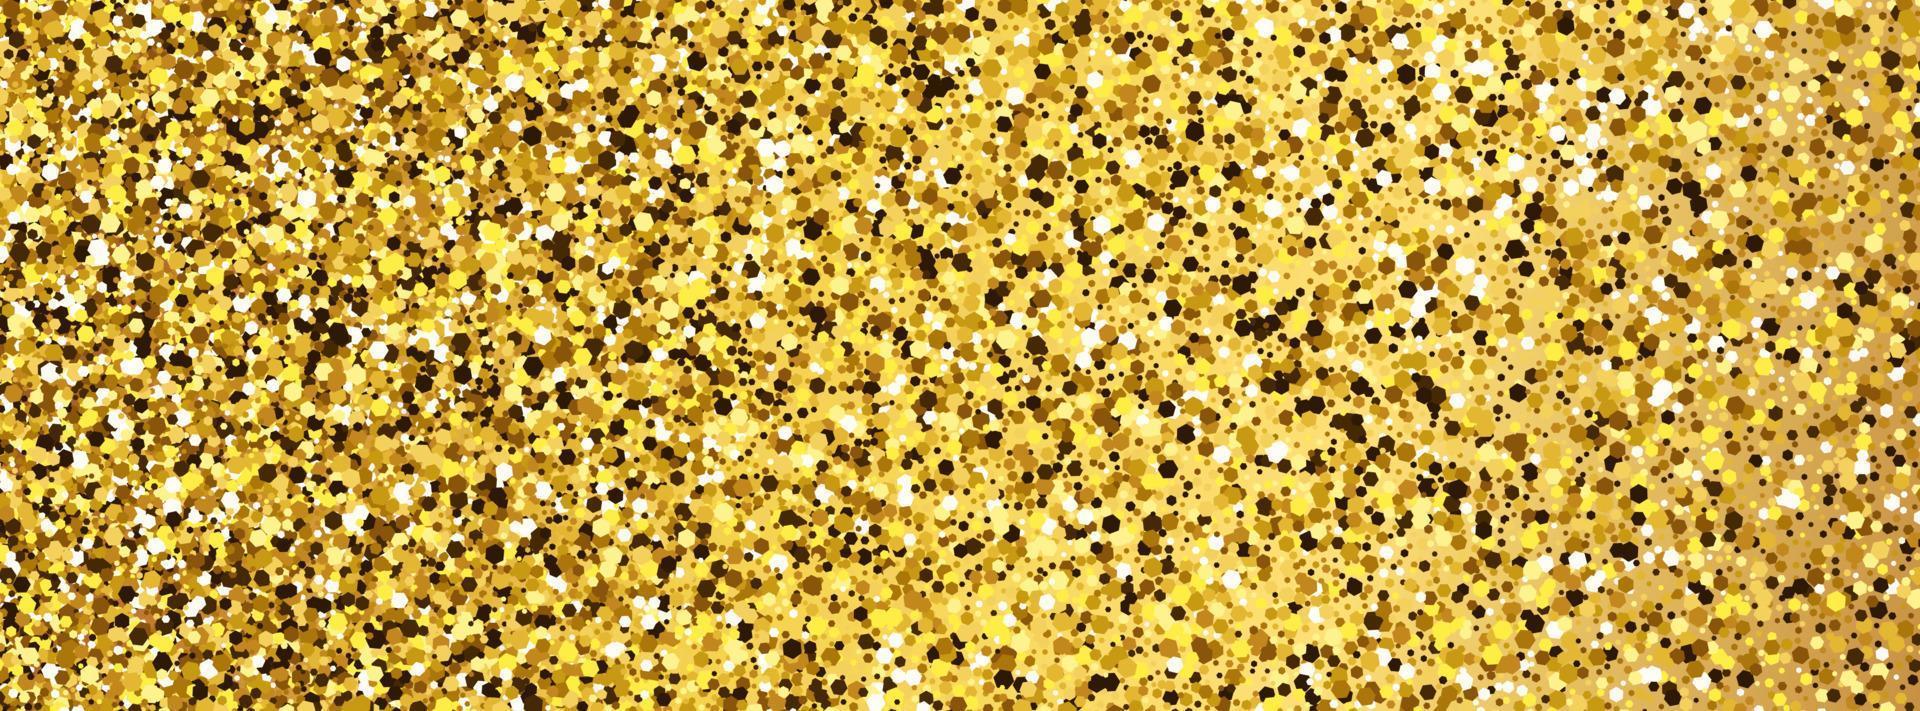 fundo brilhante dourado com brilhos dourados e efeito de glitter. projeto de bandeira. espaço vazio para o seu texto. ilustração vetorial vetor